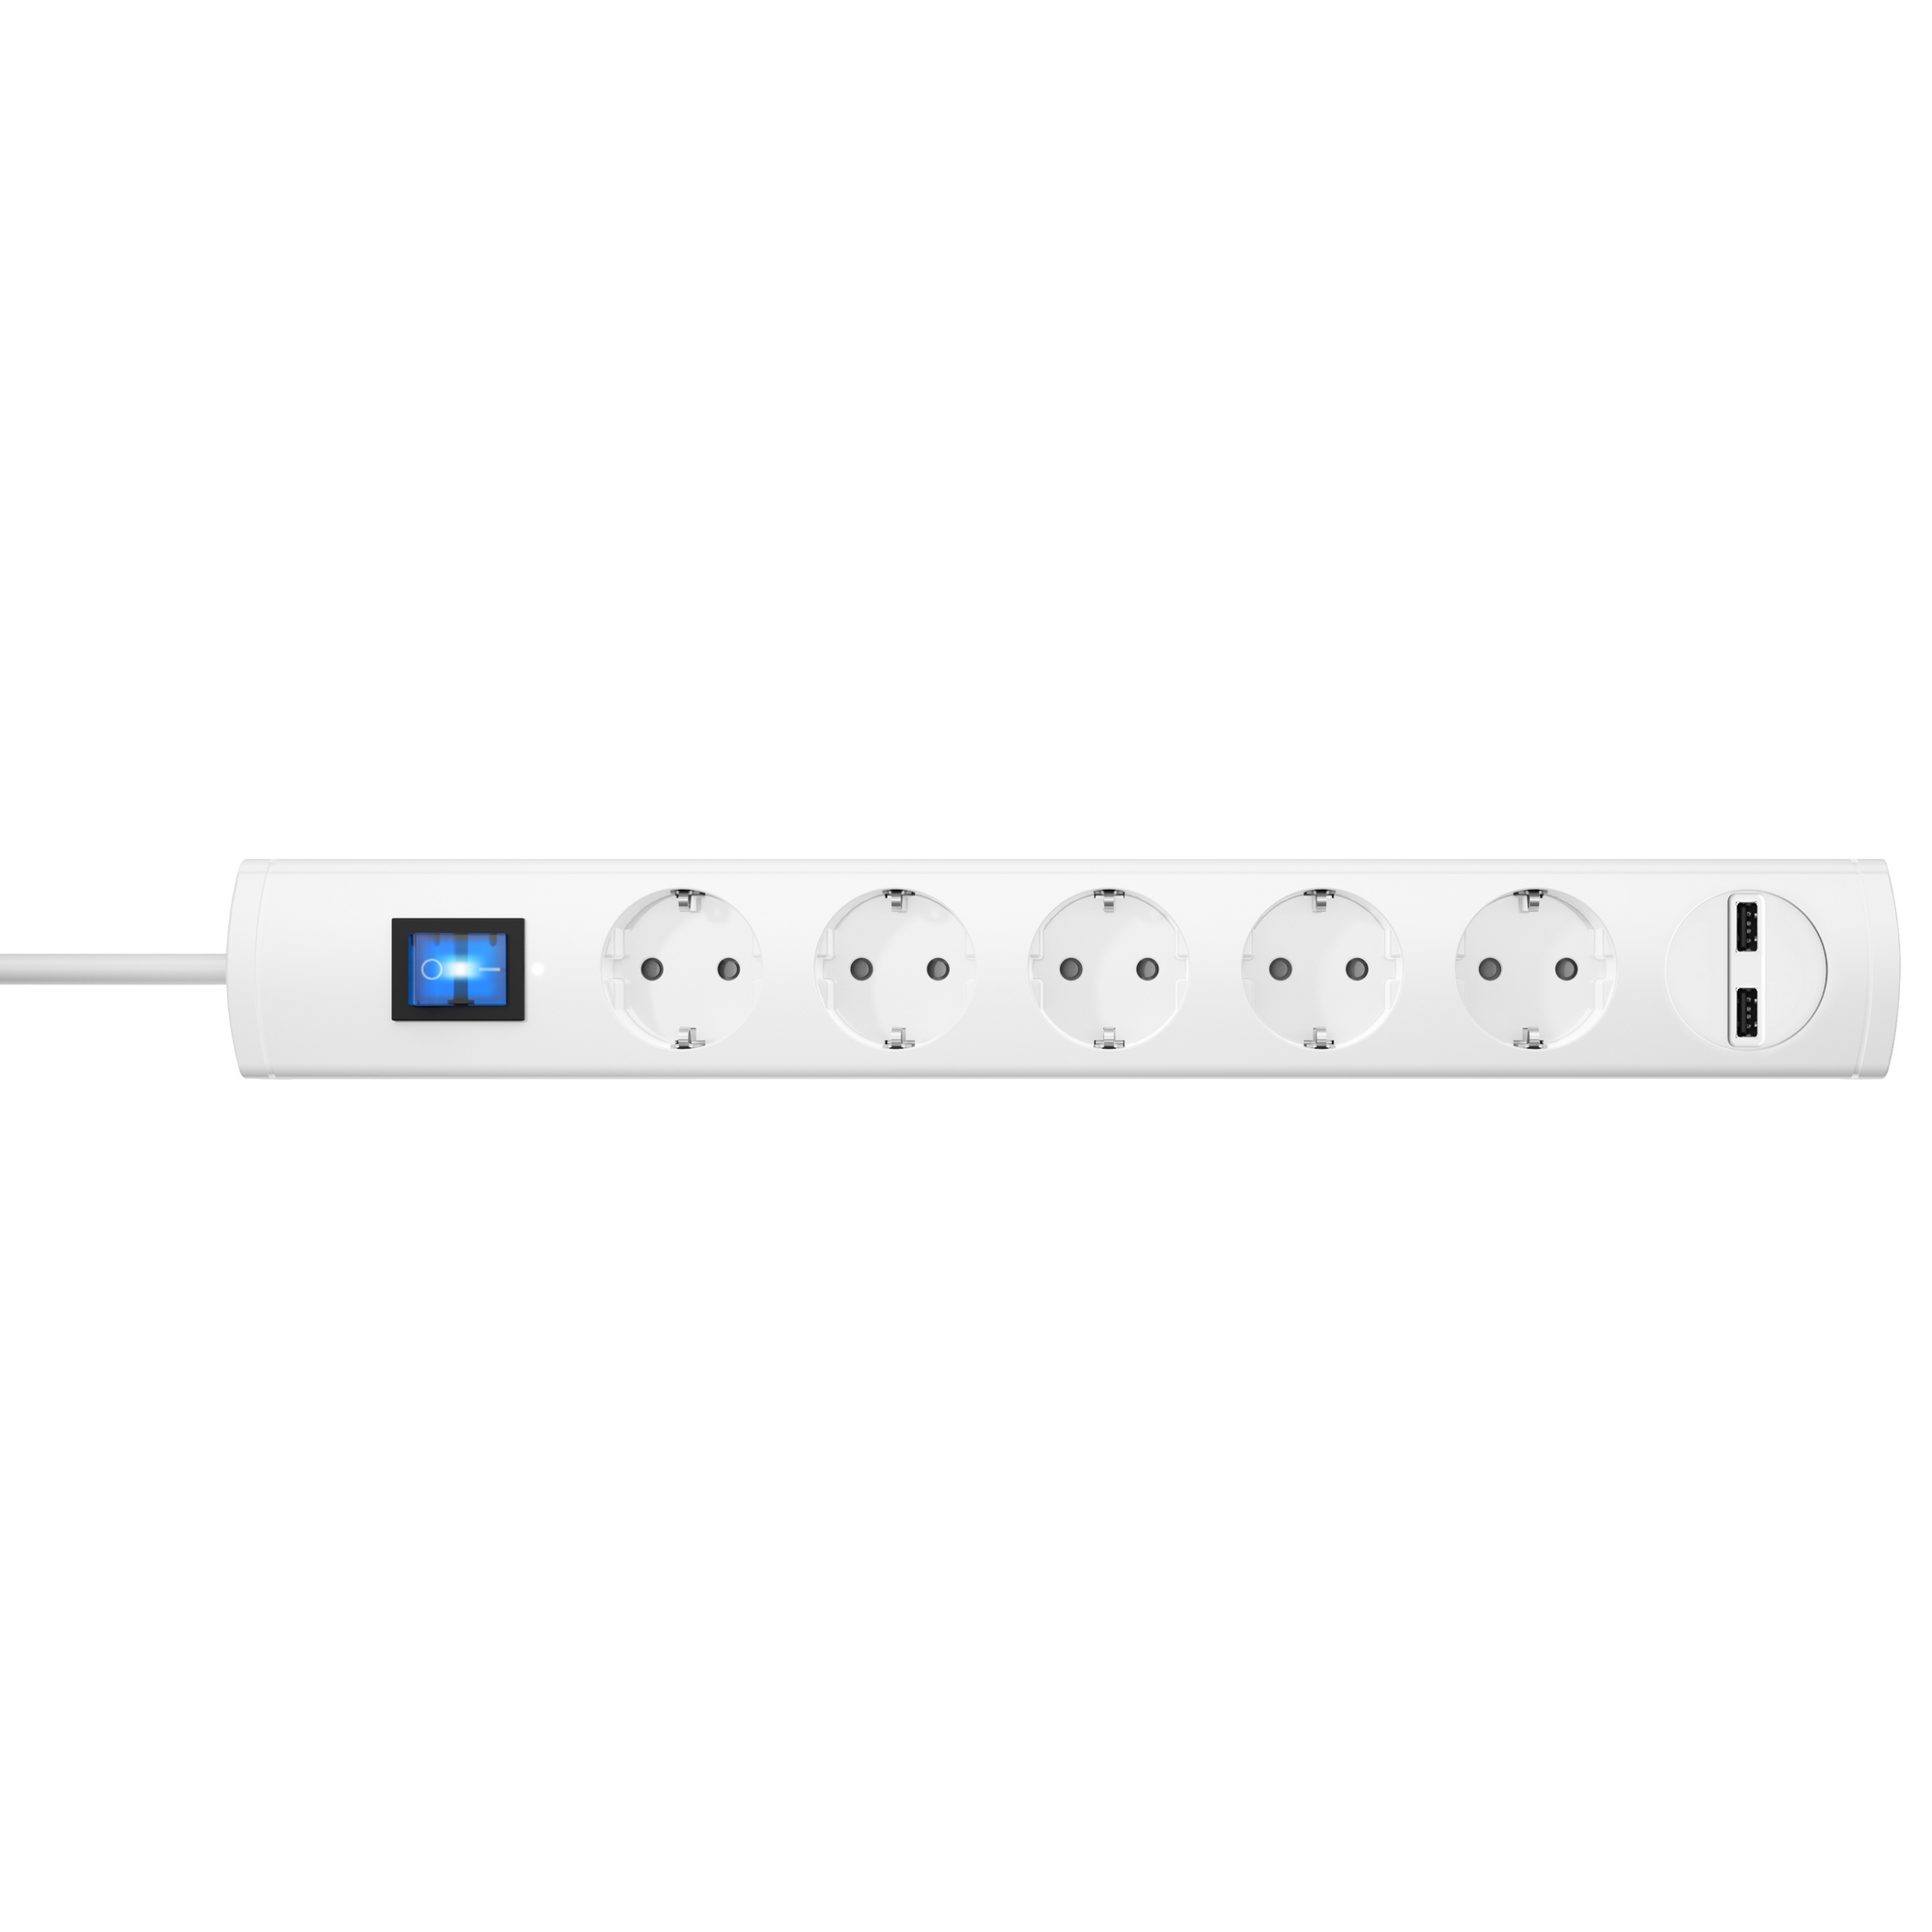 Steckdosenleiste 'Unoversal Plus' mit USB weiß 5-fach + product picture